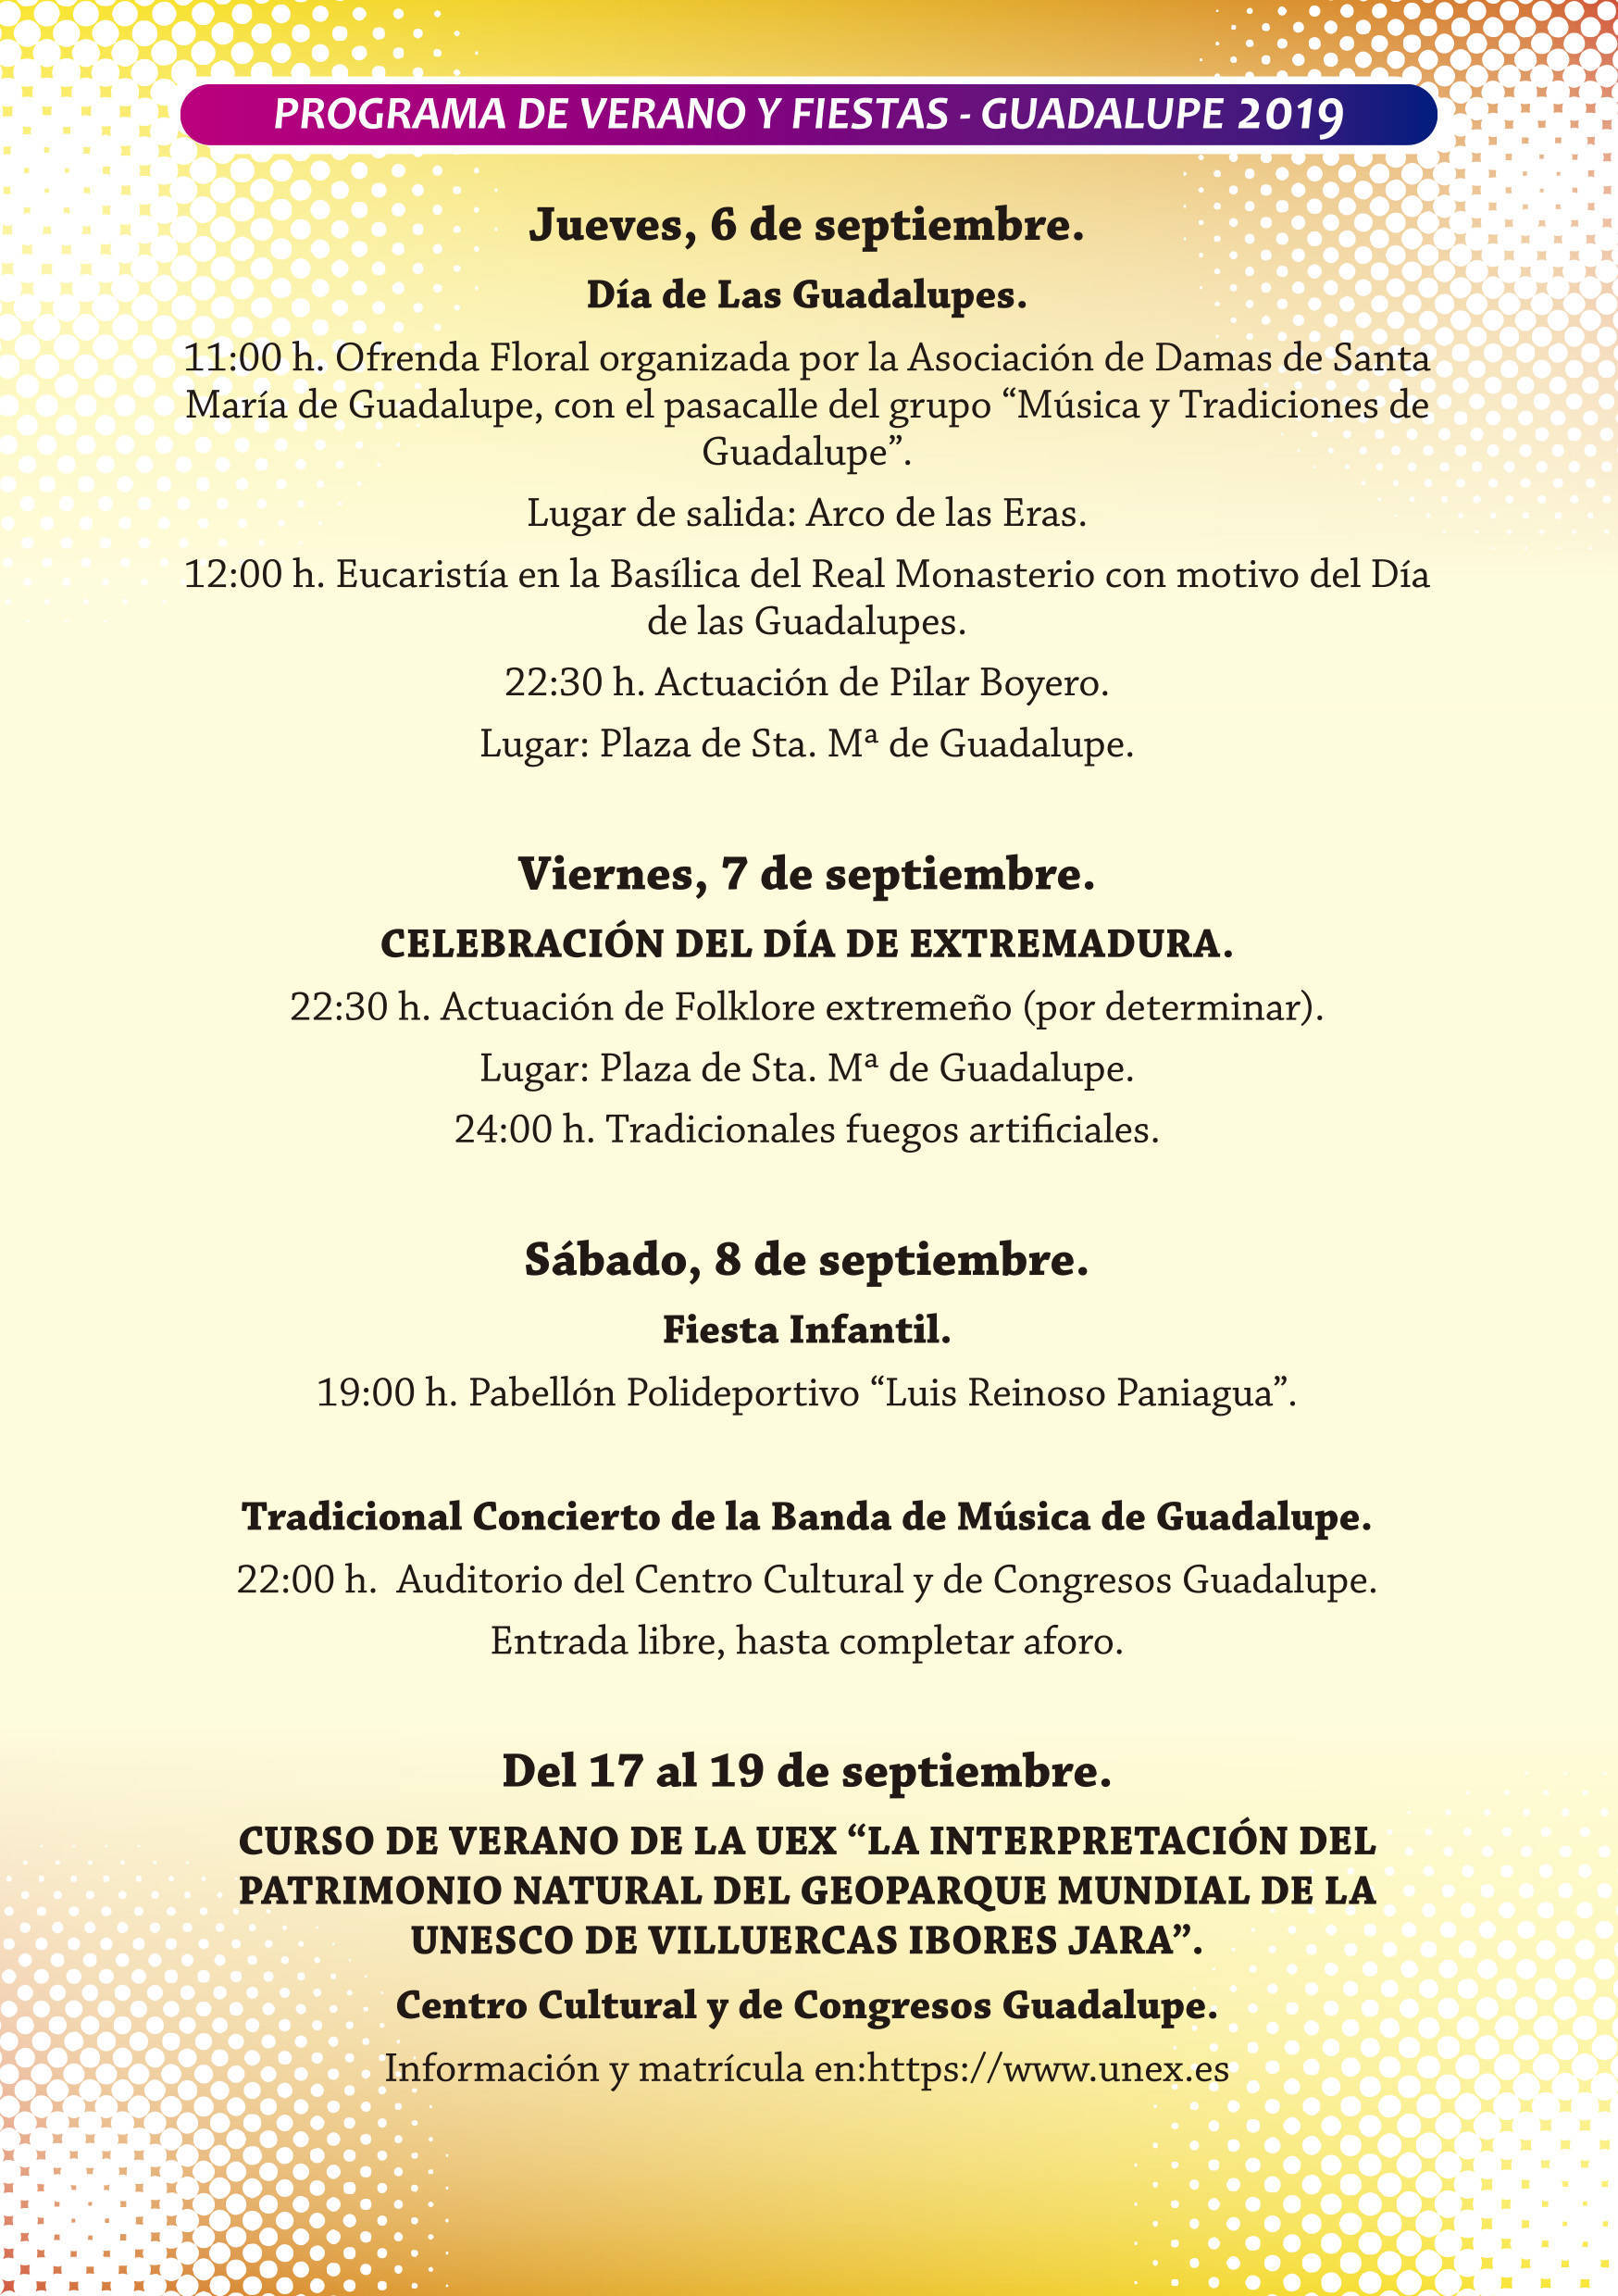 Programa de verano y fiestas 2019 - Guadalupe (Cáceres) 13